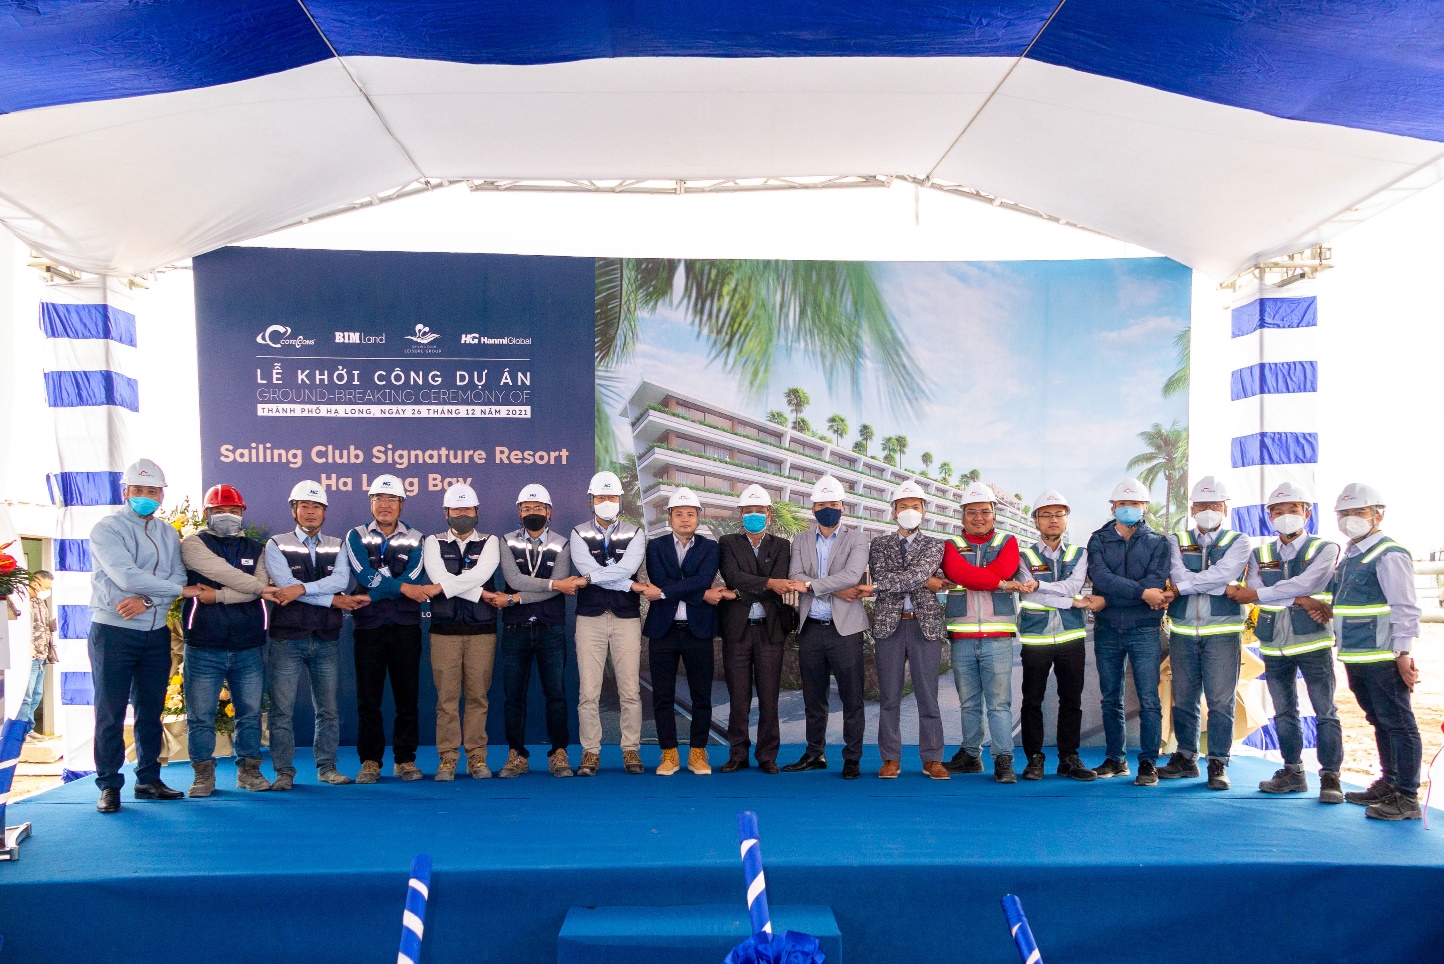 BIM Land công bố đơn vị quản lý dự án cùng tổng thầu và khởi công Sailing Club Signature Resort Ha Long Bay - Ảnh 3.